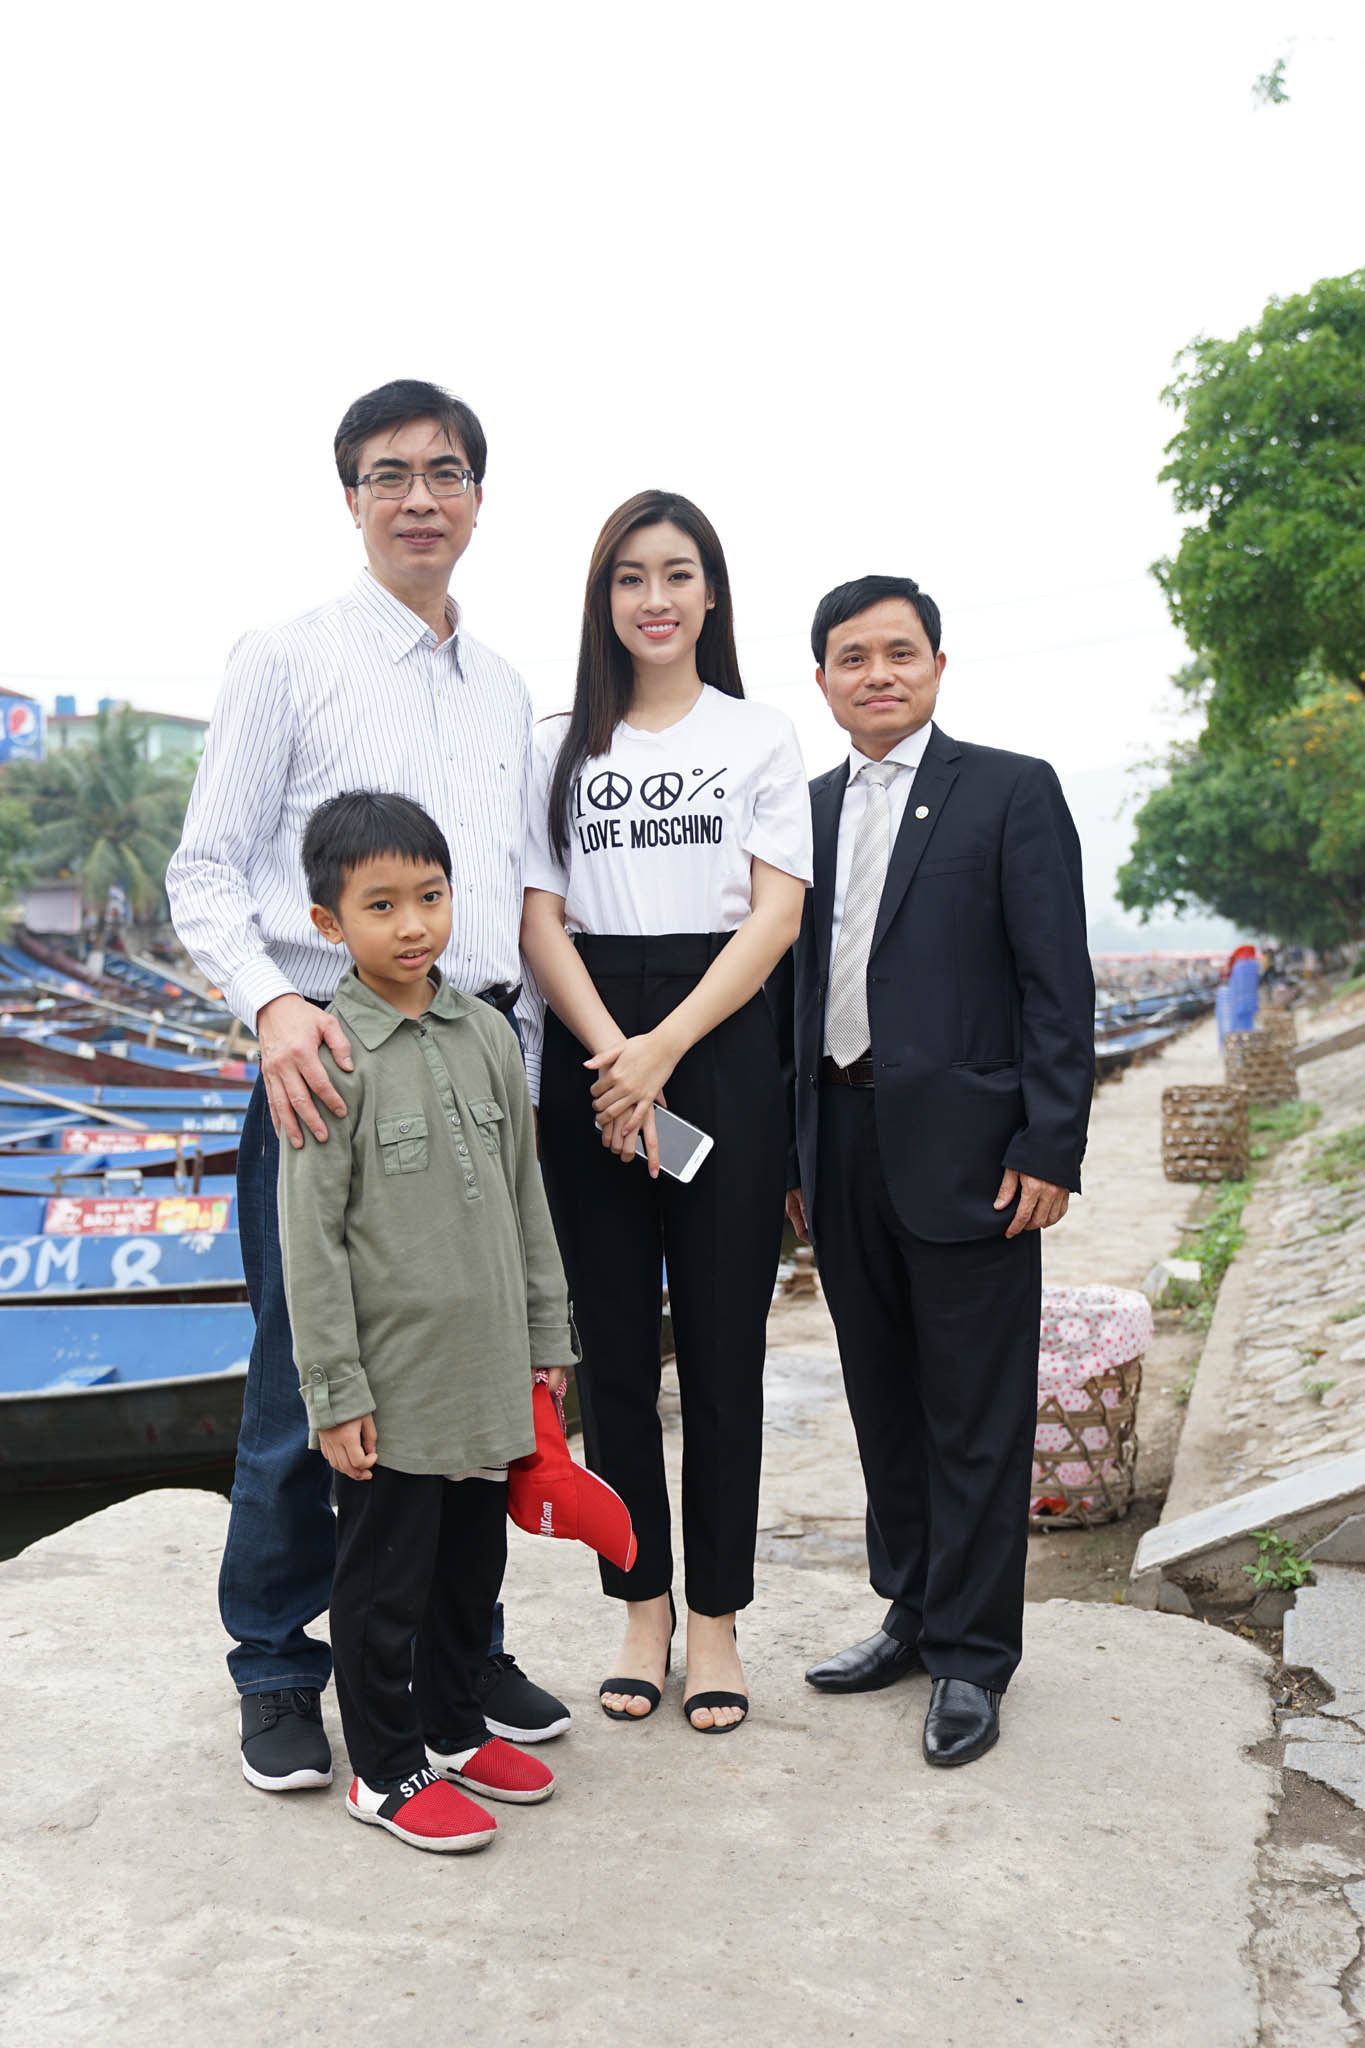 Hoa hậu Đỗ Mỹ Linh tham gia bảo vệ môi trường và thiện nguyện tại xã Hương Sơn, Mỹ Đức, Hà Nội